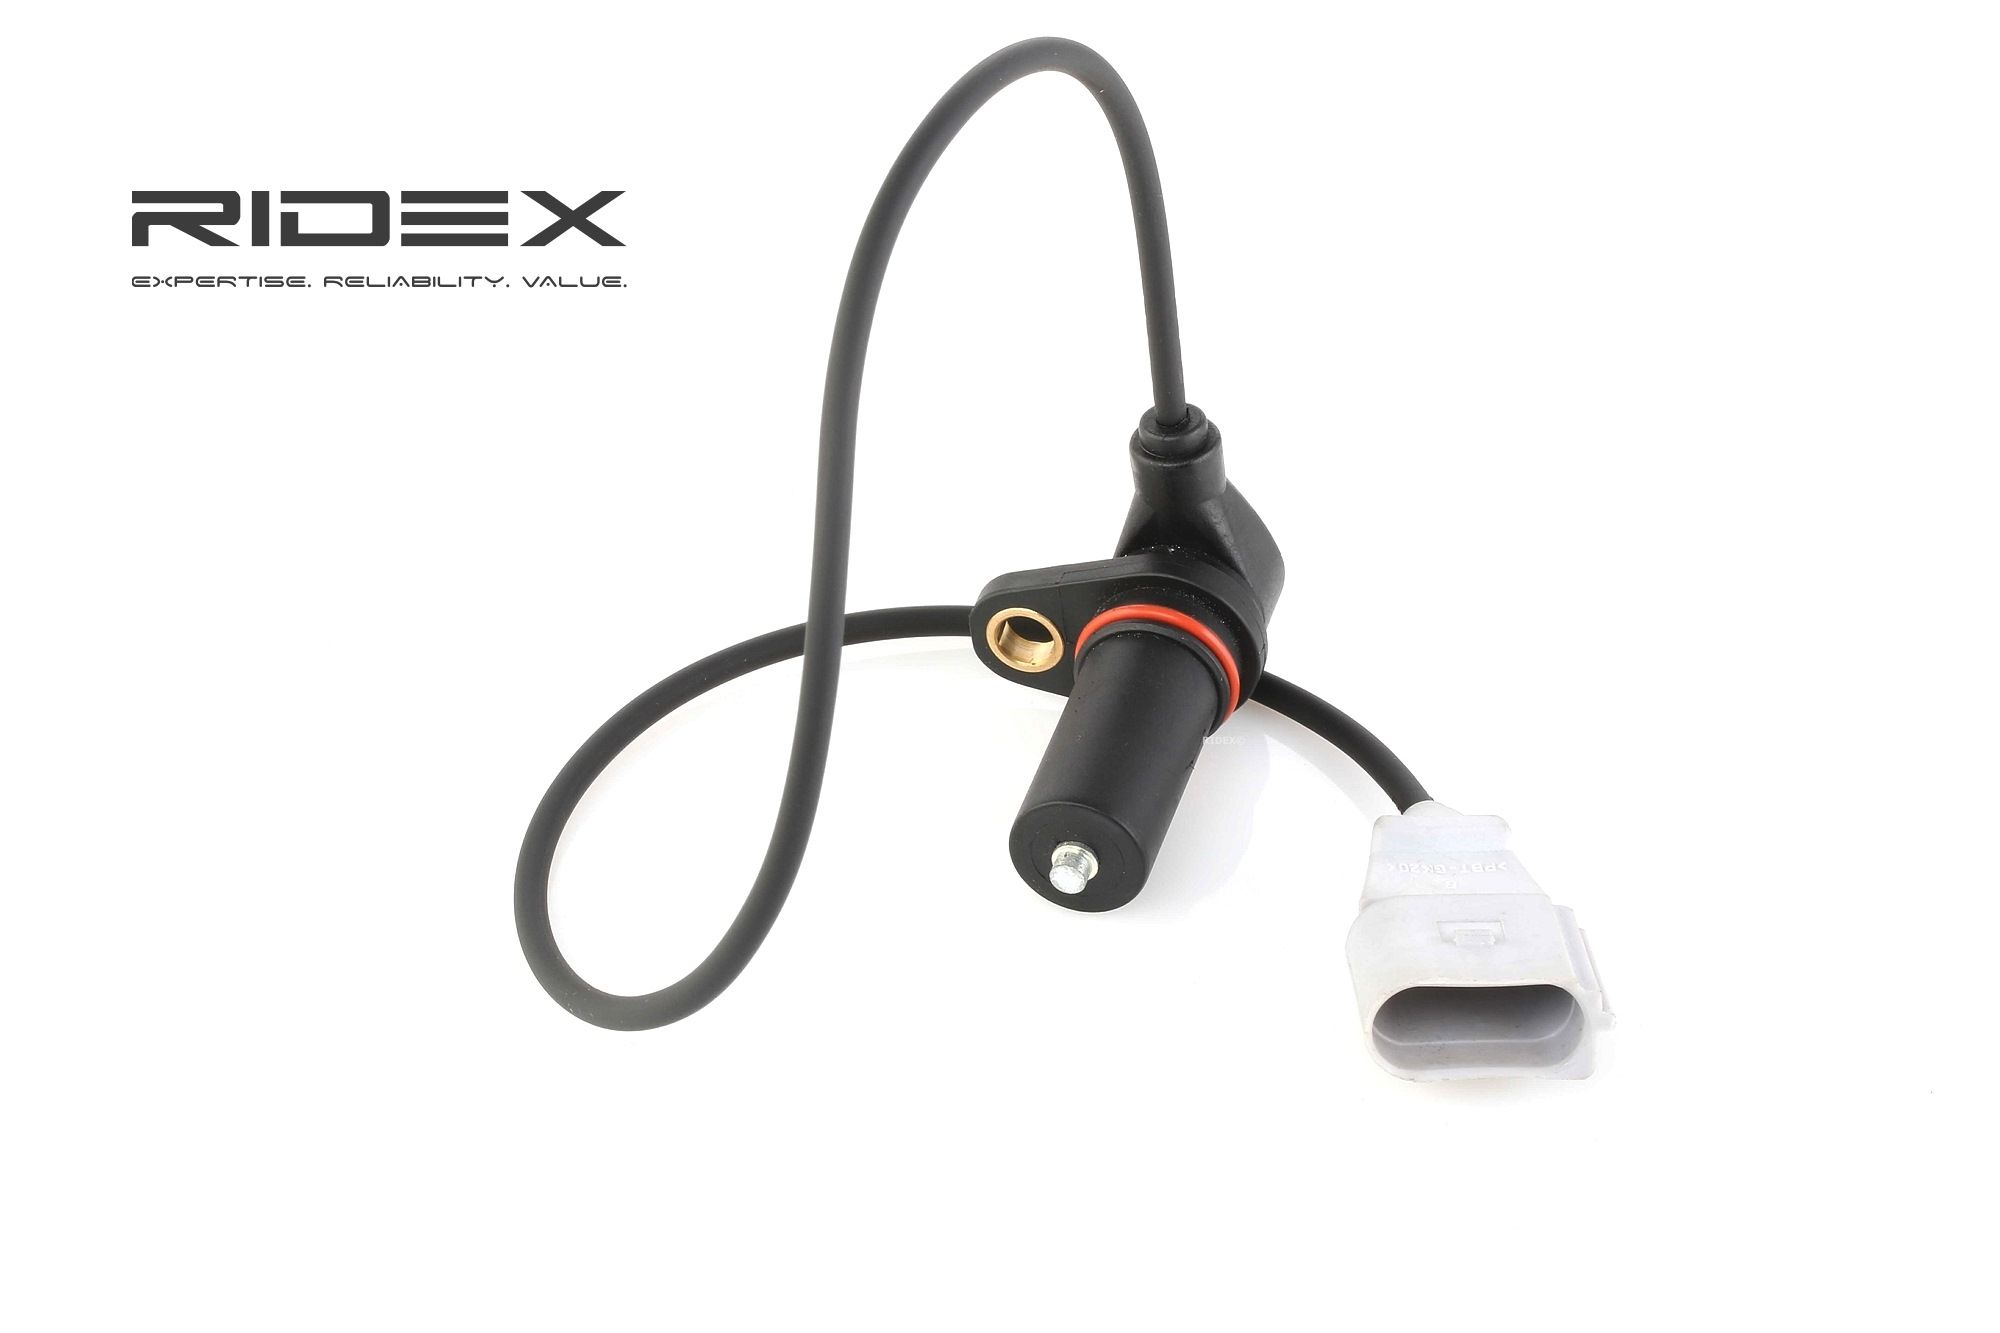 RIDEX 833C0099 Crankshaft sensor 3-pin connector, Inductive Sensor